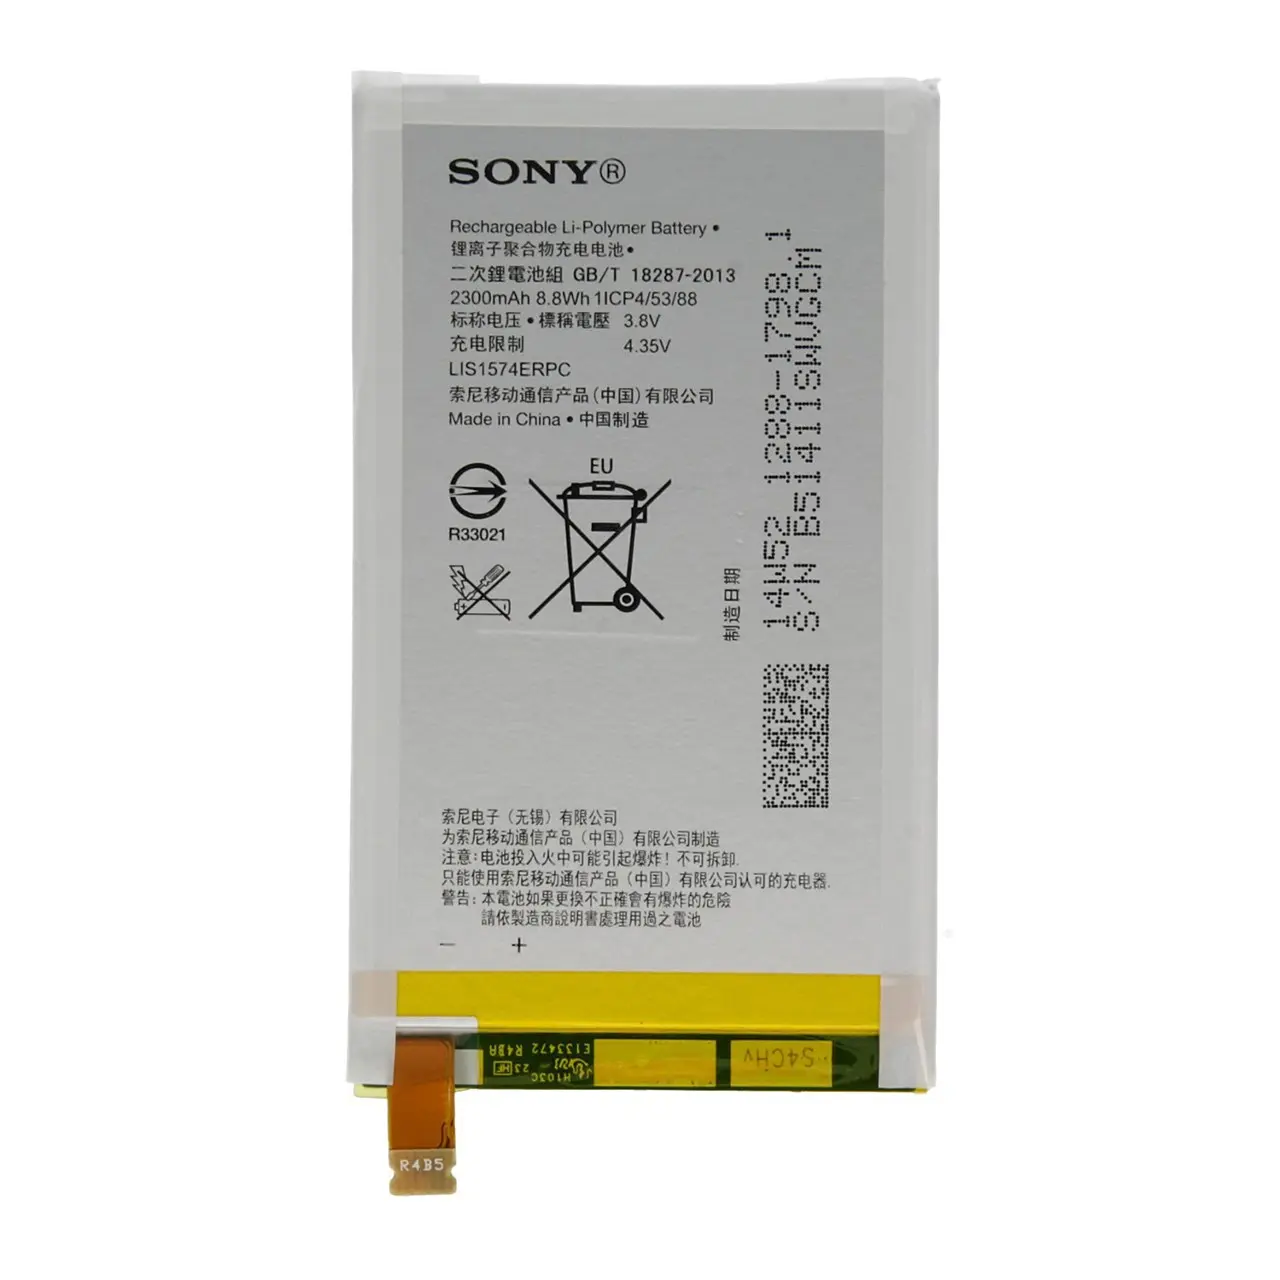 باتری مدل LIS1574ERPC مناسب برای گوشی سونی Xperia E4